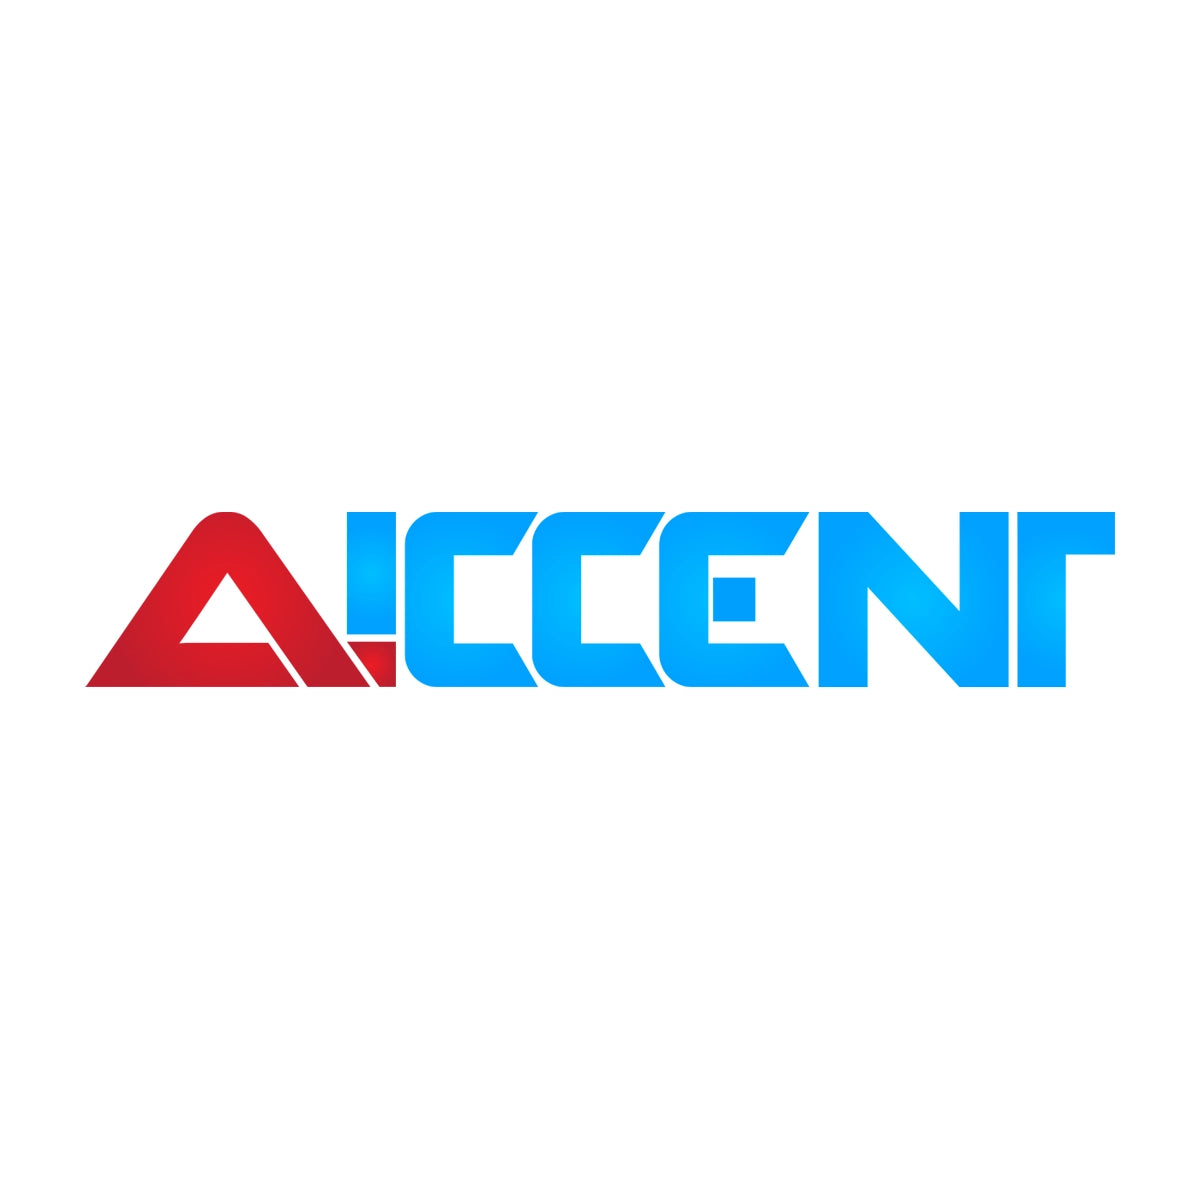 Aiccent.com